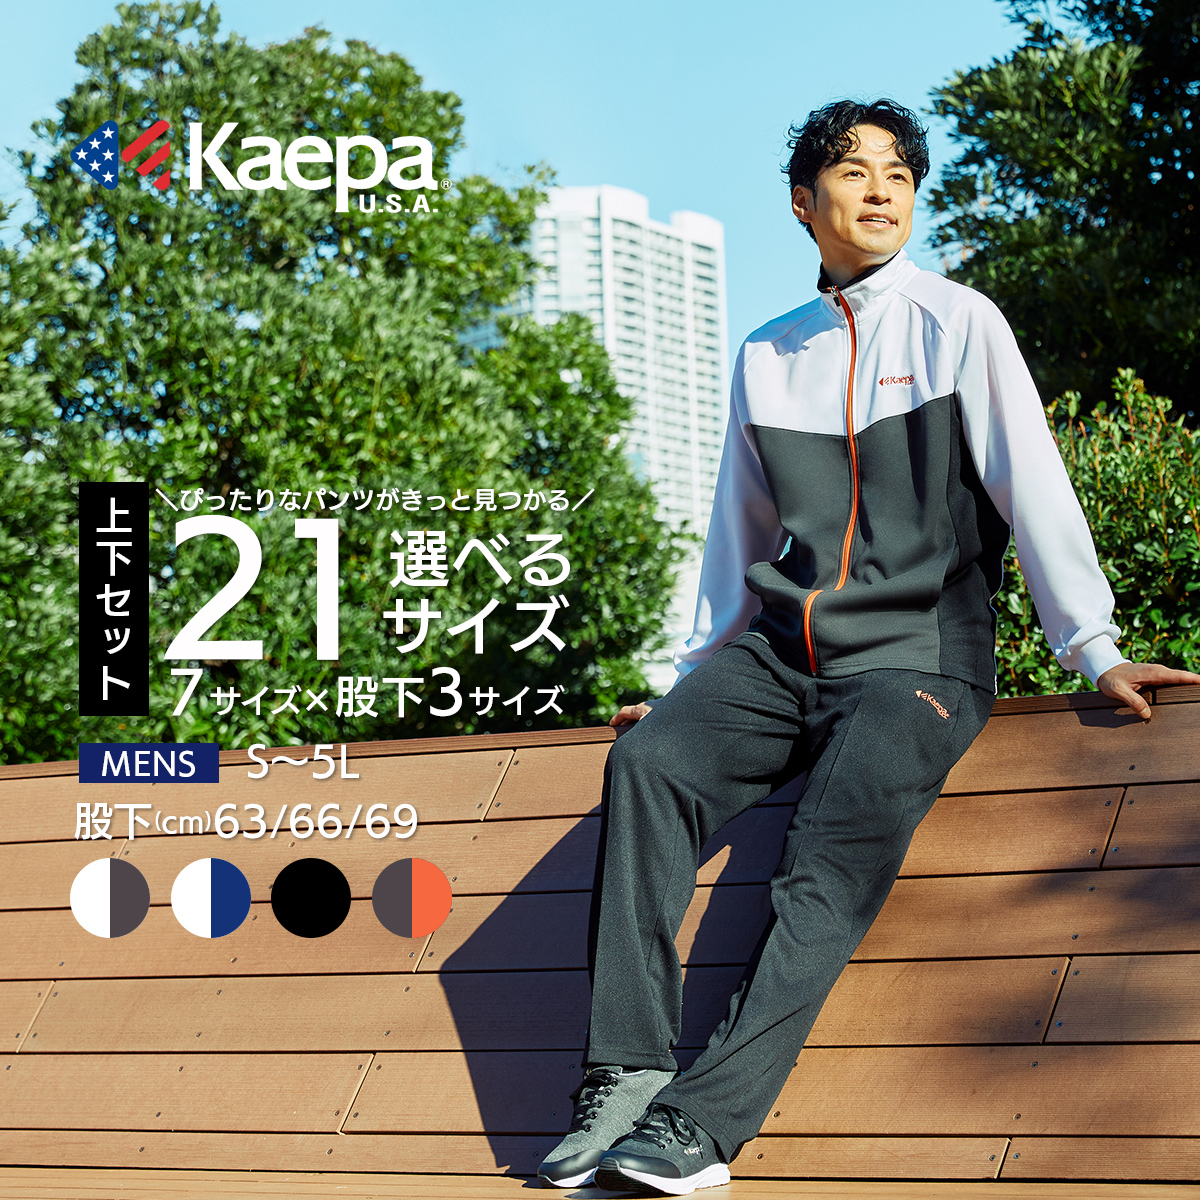 Kaepa Kei pa length джерси верх и низ в комплекте мужской можно выбрать длина ног длина ног 63cm 66cm 69cm большой размер тренировка kp366 бесплатная доставка [AP]